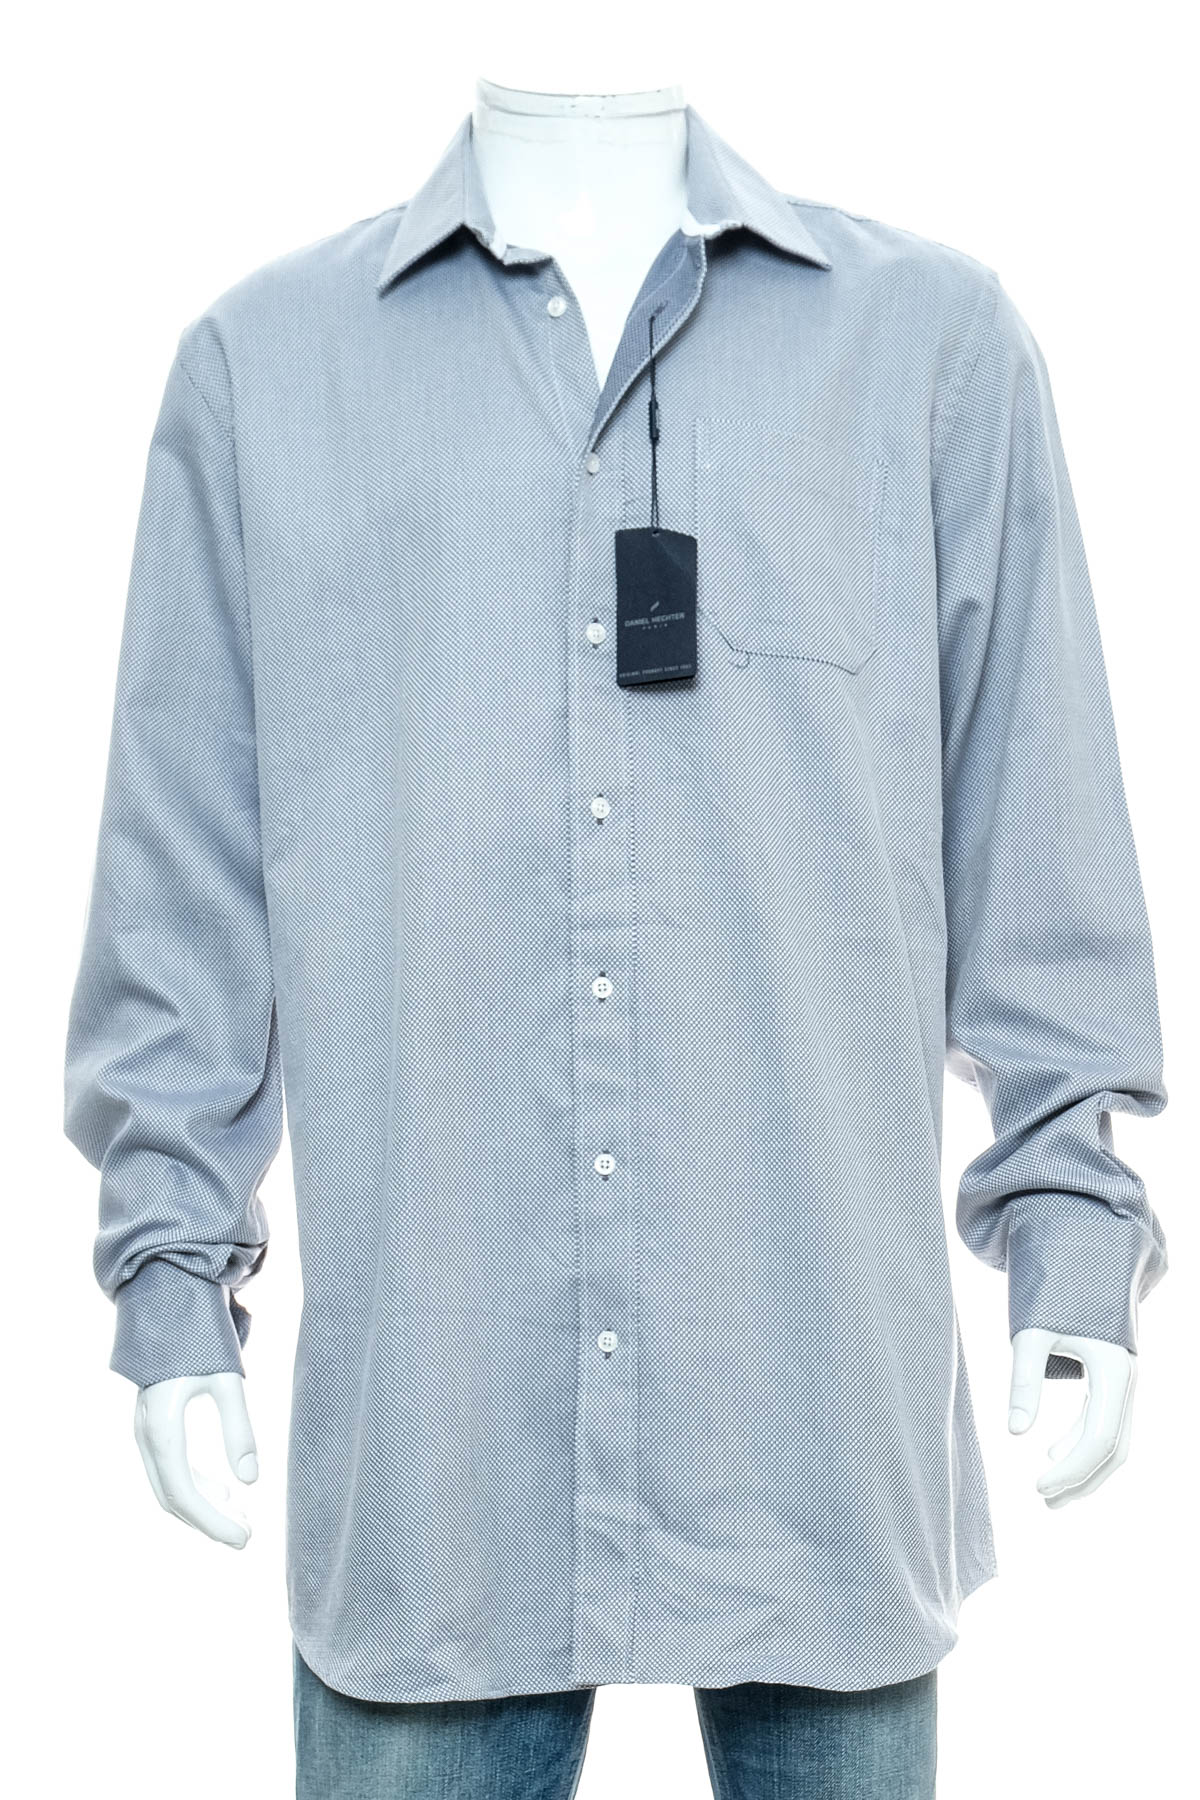 Ανδρικό πουκάμισο - Daniel Hechter - 0